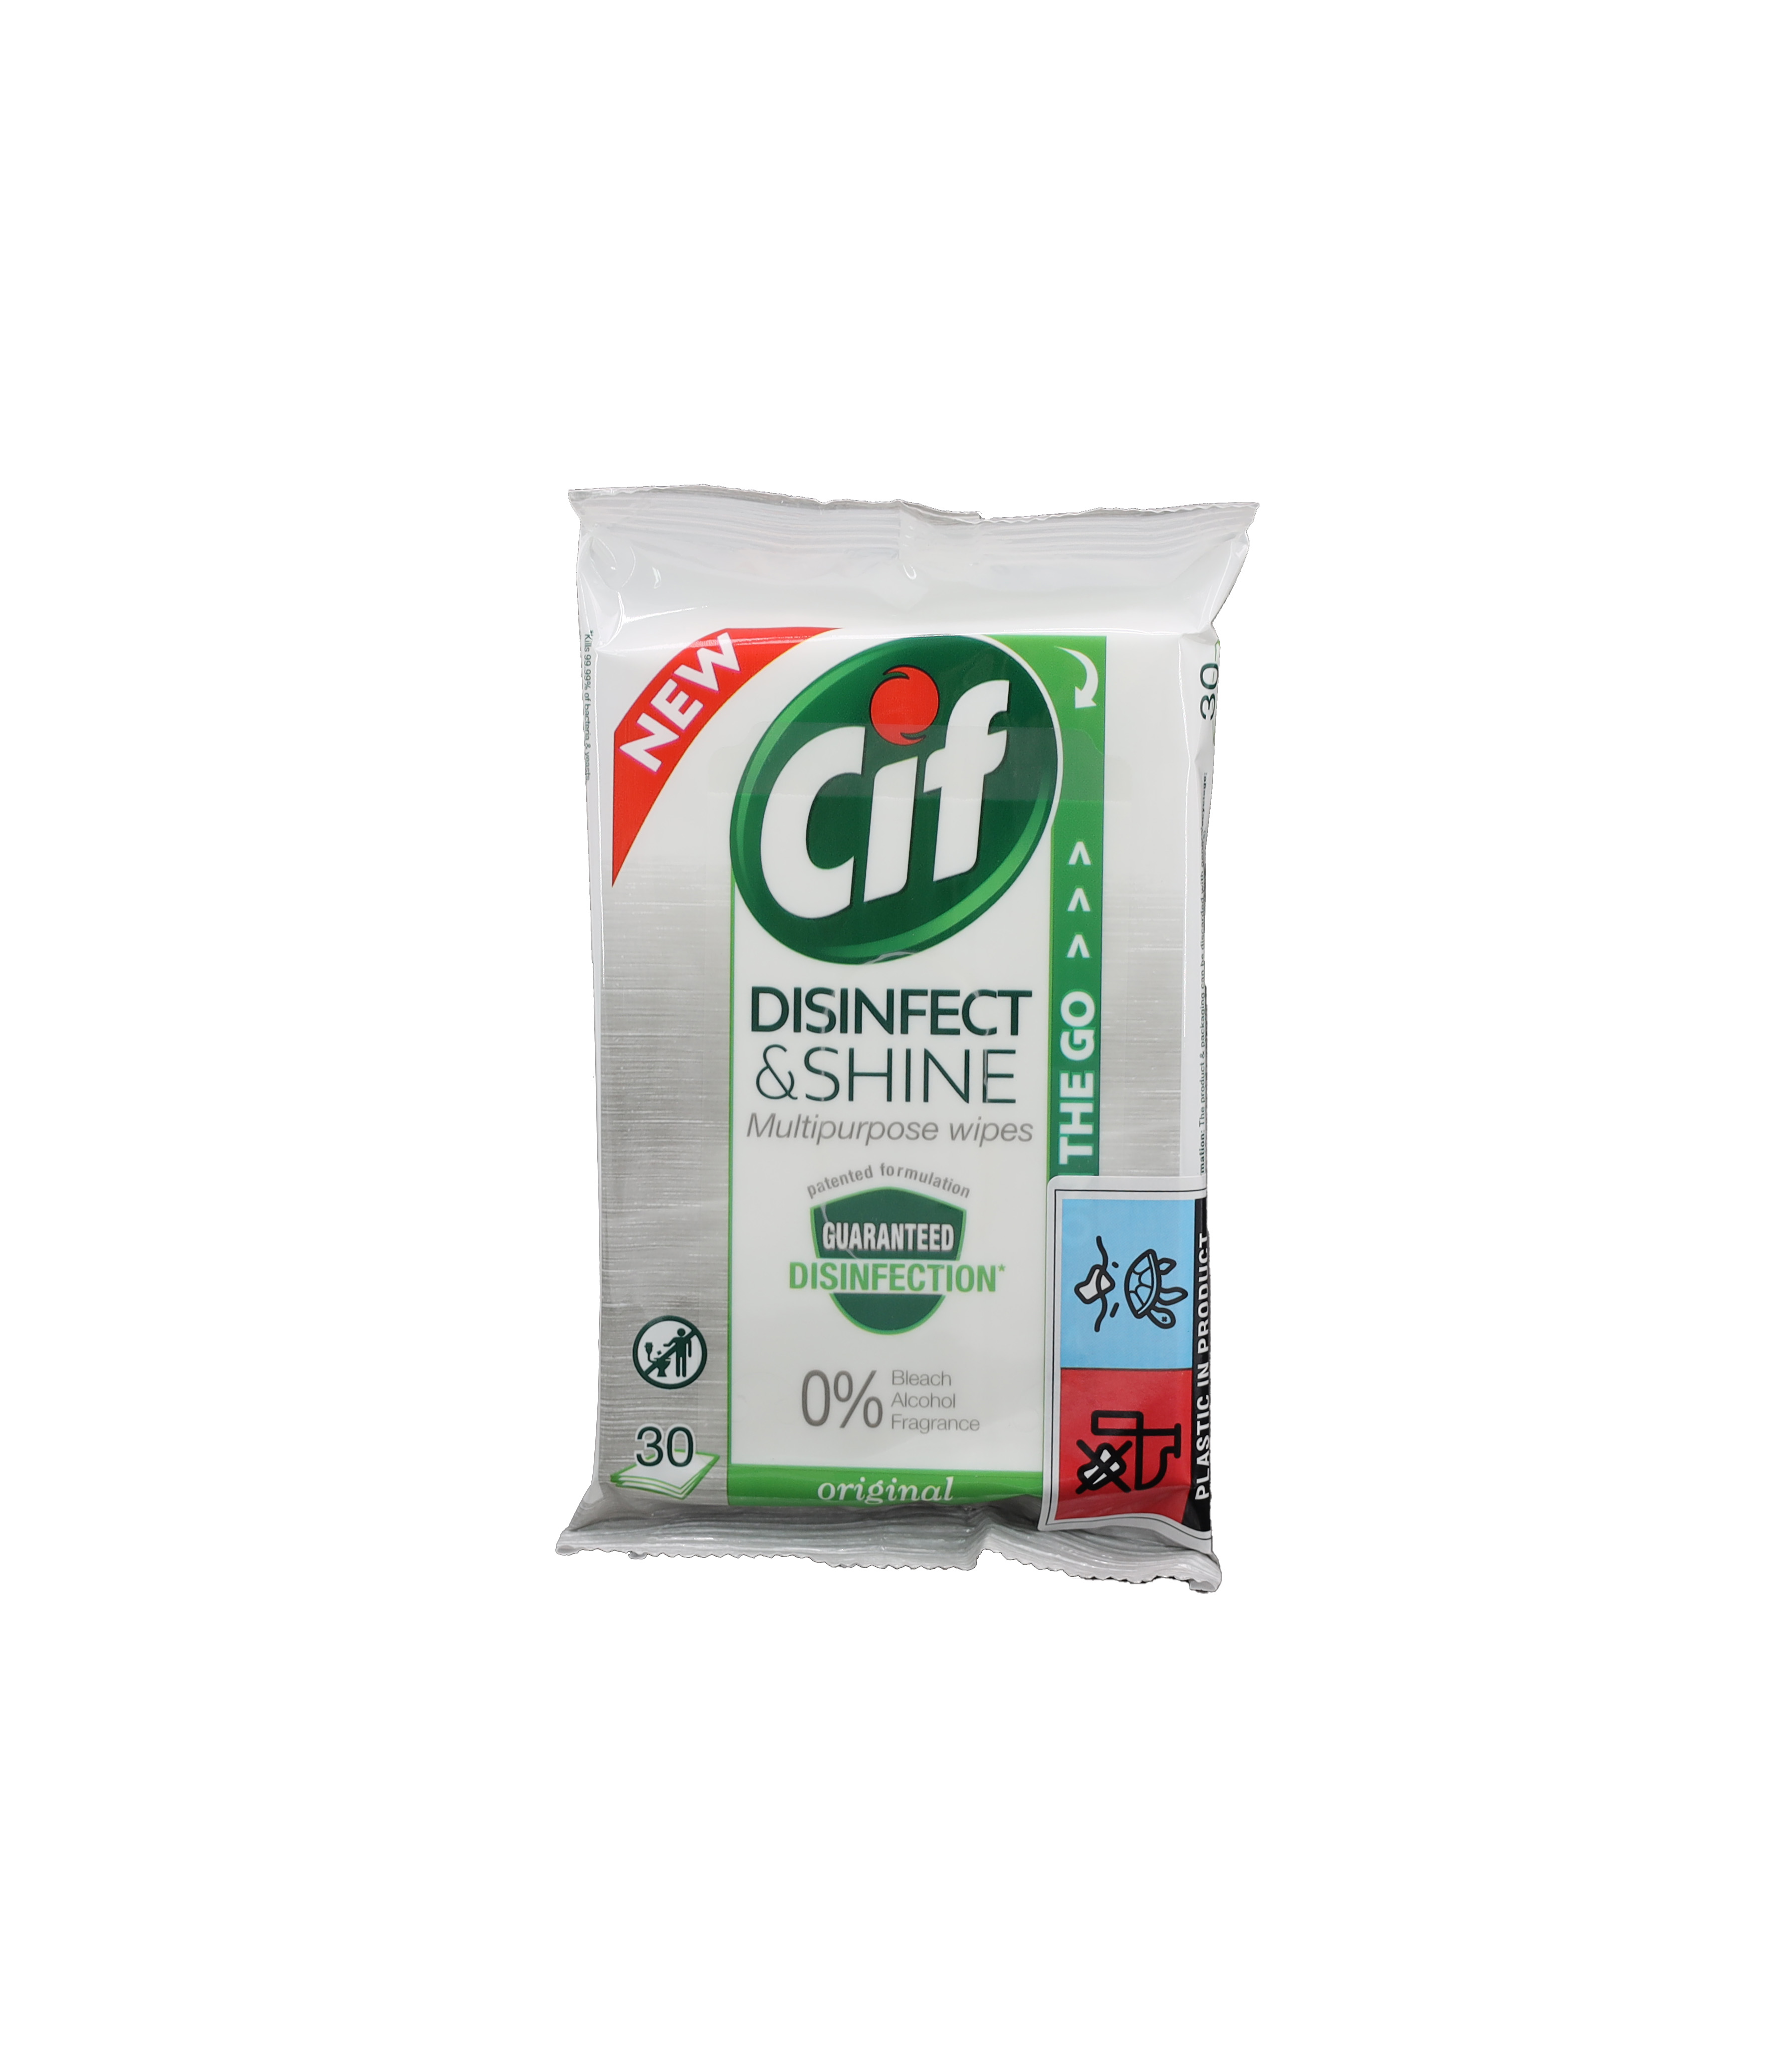 Cif Disinfect & Shine Wipes Reinigungstücher 30 Blatt